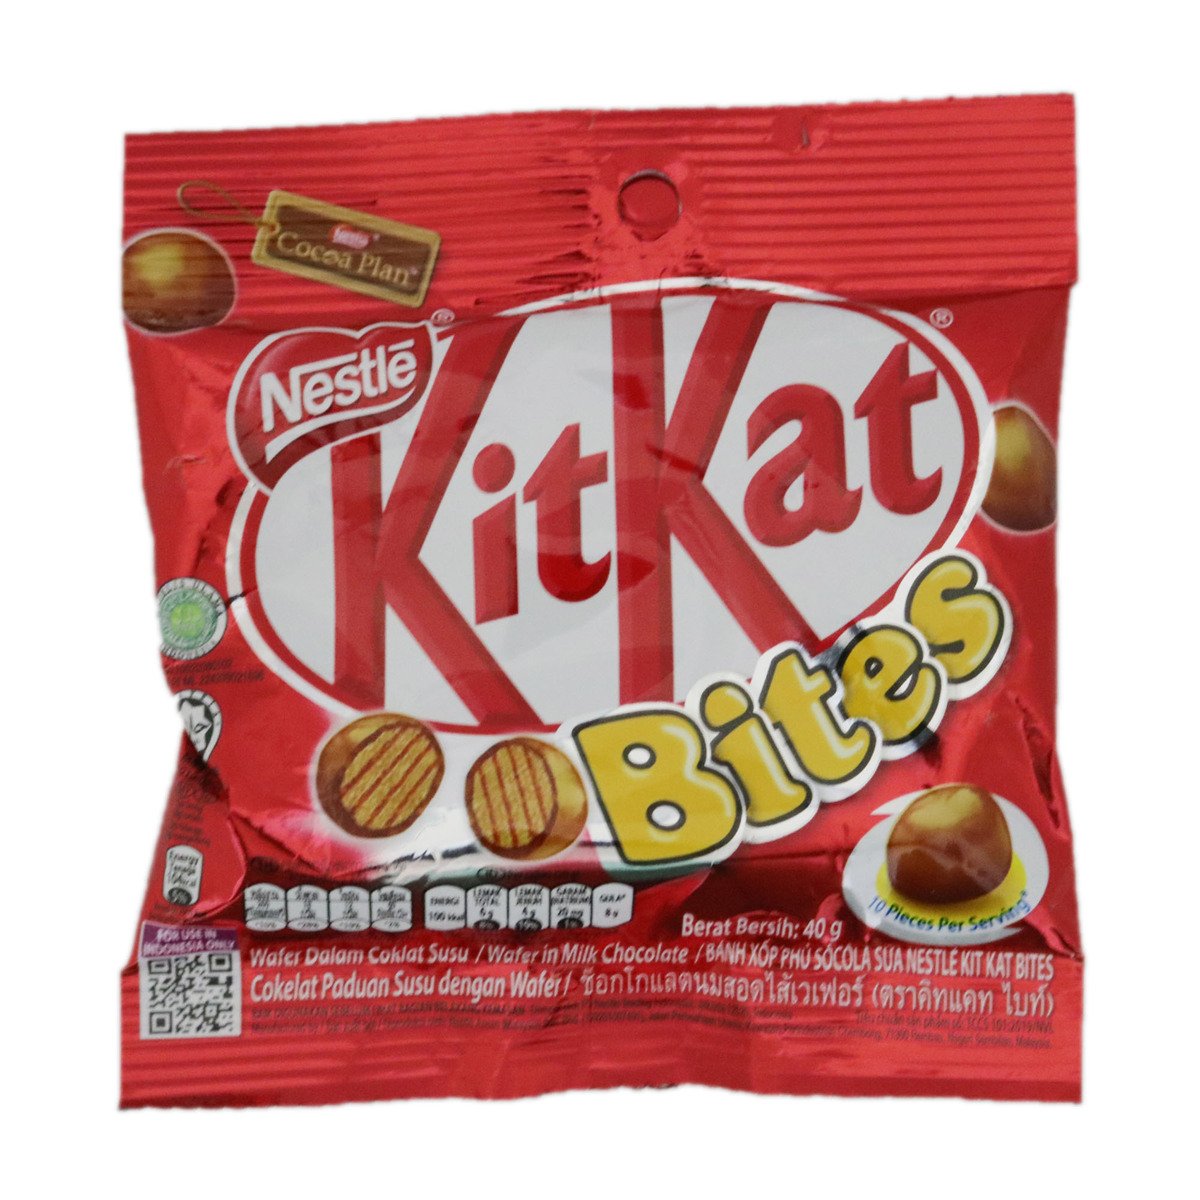 Kit Kat Bites 40g